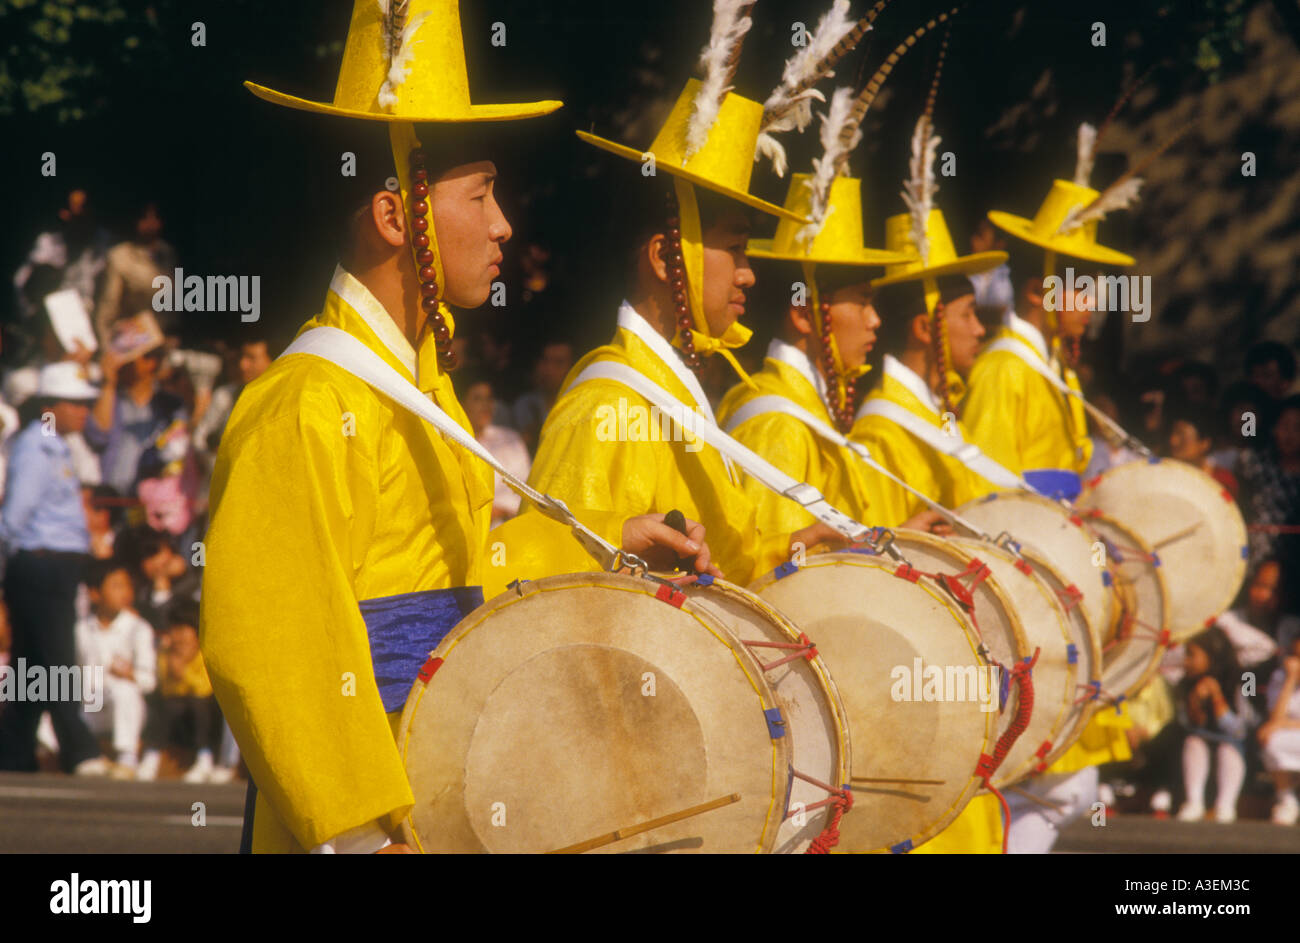 south korea south korea asia asian oriental parade olympia drum costume men celebration red yello blue flag national pride seoul Stock Photo